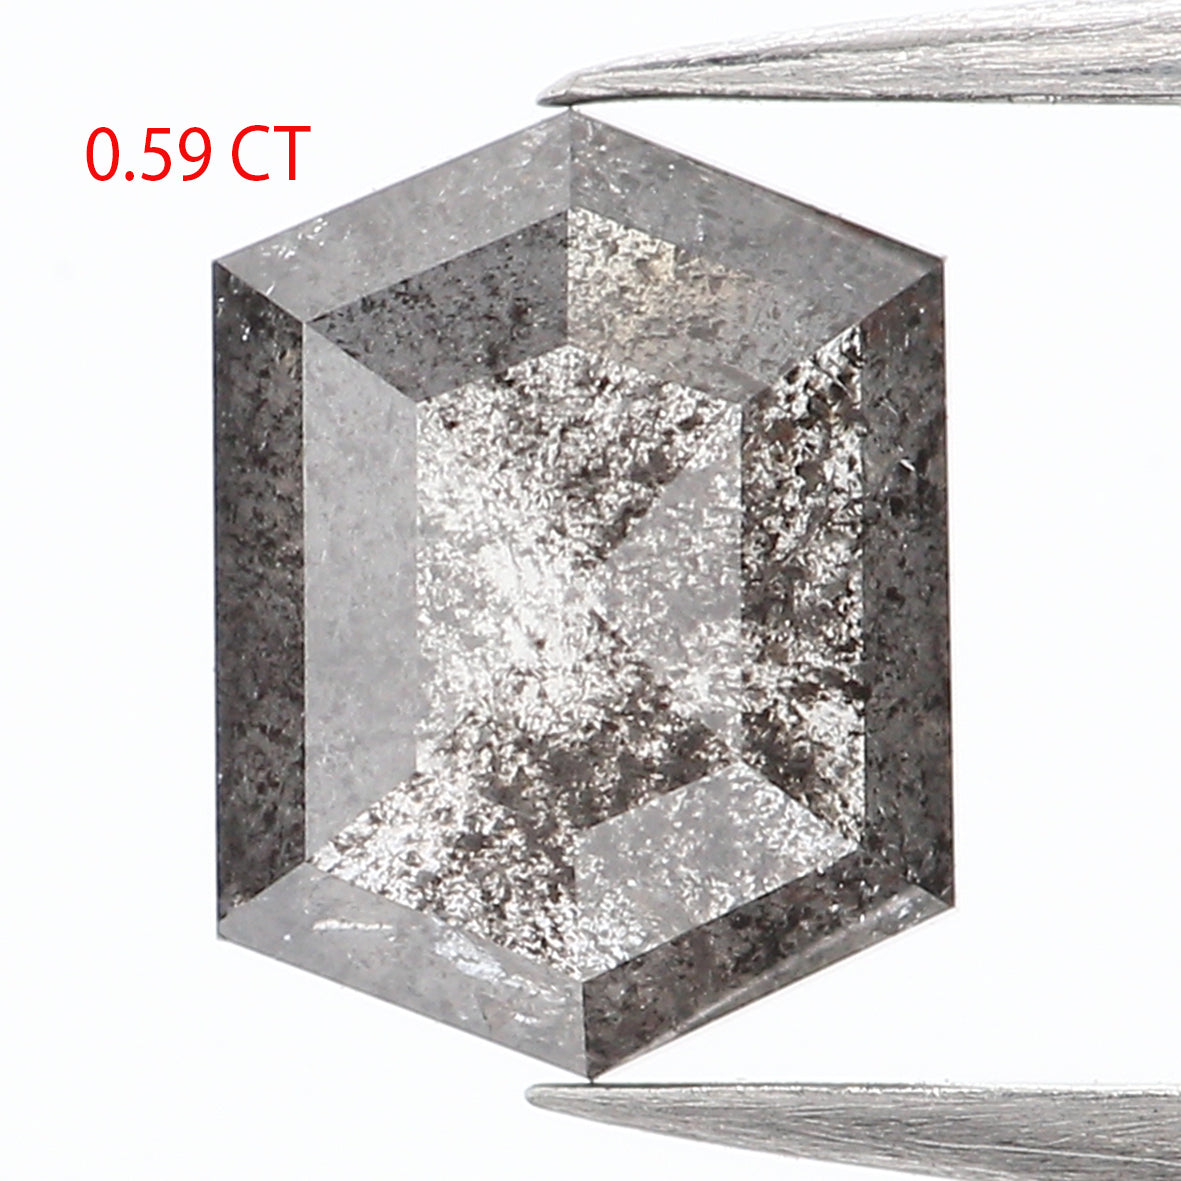 0.59 CT Natural Loose Hexagon Cut Diamond Salt And Pepper Hexagon Diamond 5.85 MM Natural Loose Black Grey Color Hexagon Cut Diamond QL935